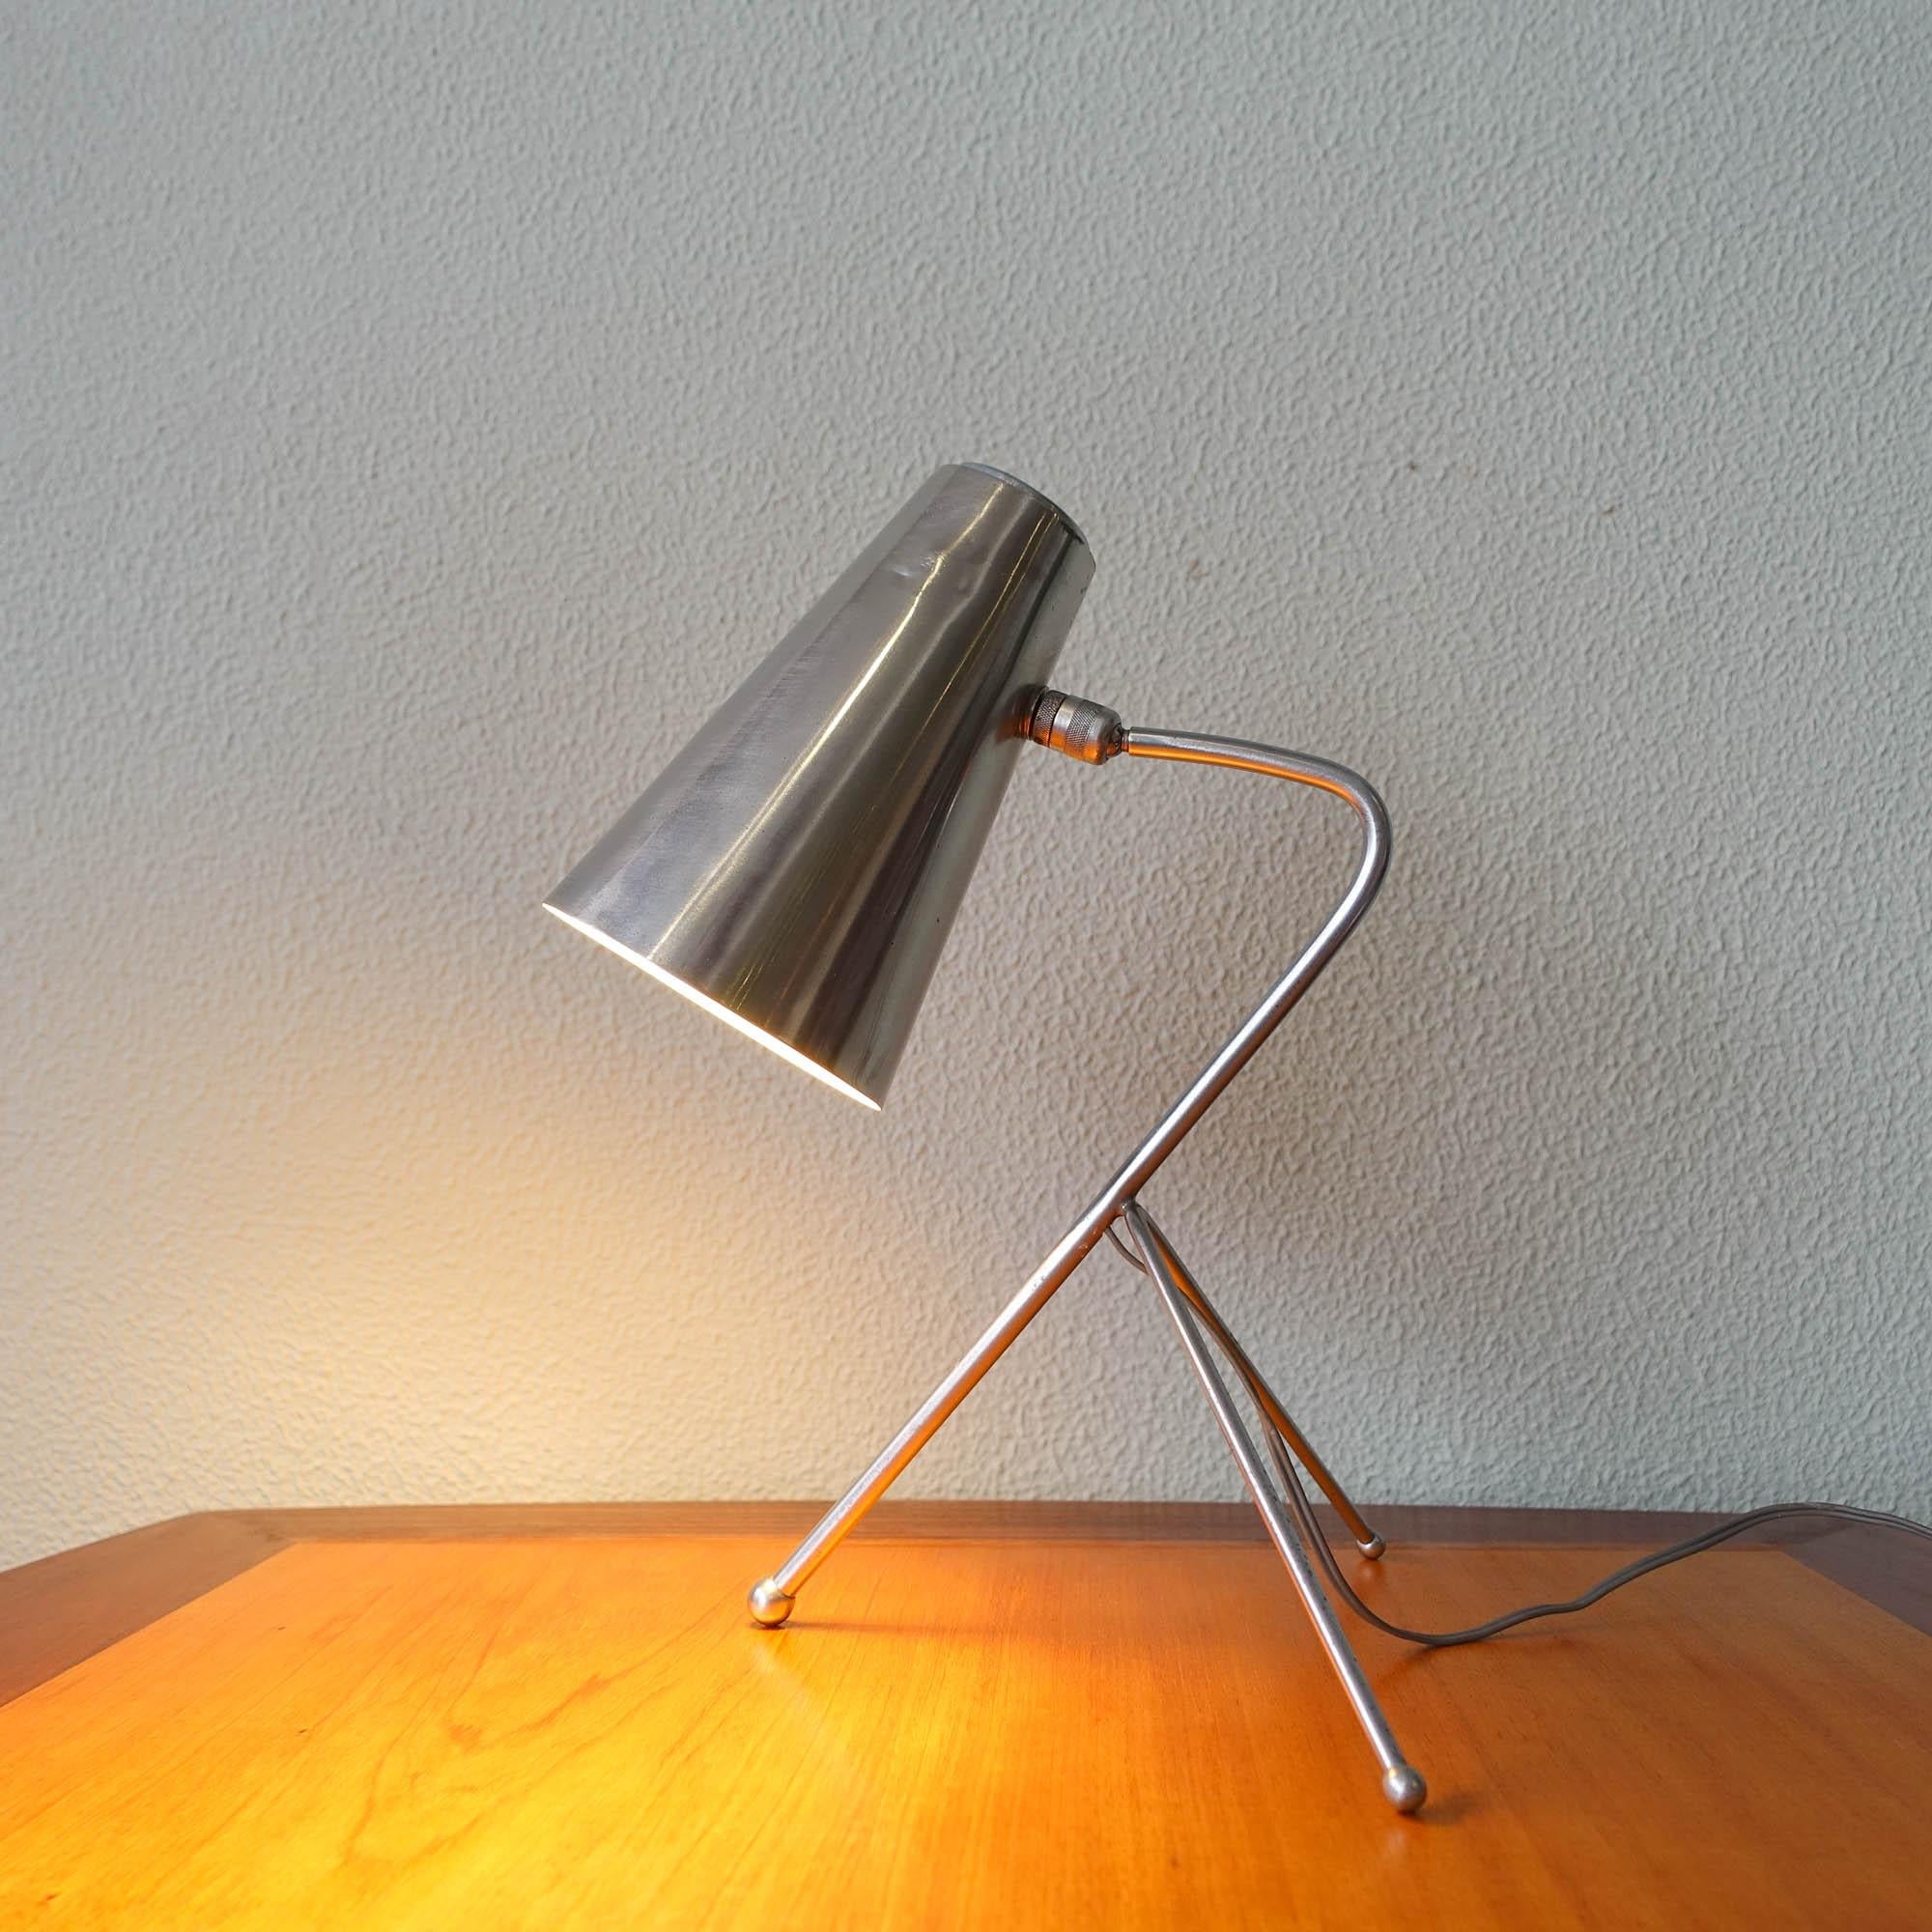 Cette lampe de bureau a été conçue et produite en Italie dans les années 1950. Elle présente un design élégant avec une base tripode et un abat-jour en aluminium. L'abat-jour de la lampe est articulé, ce qui vous permet de le positionner de